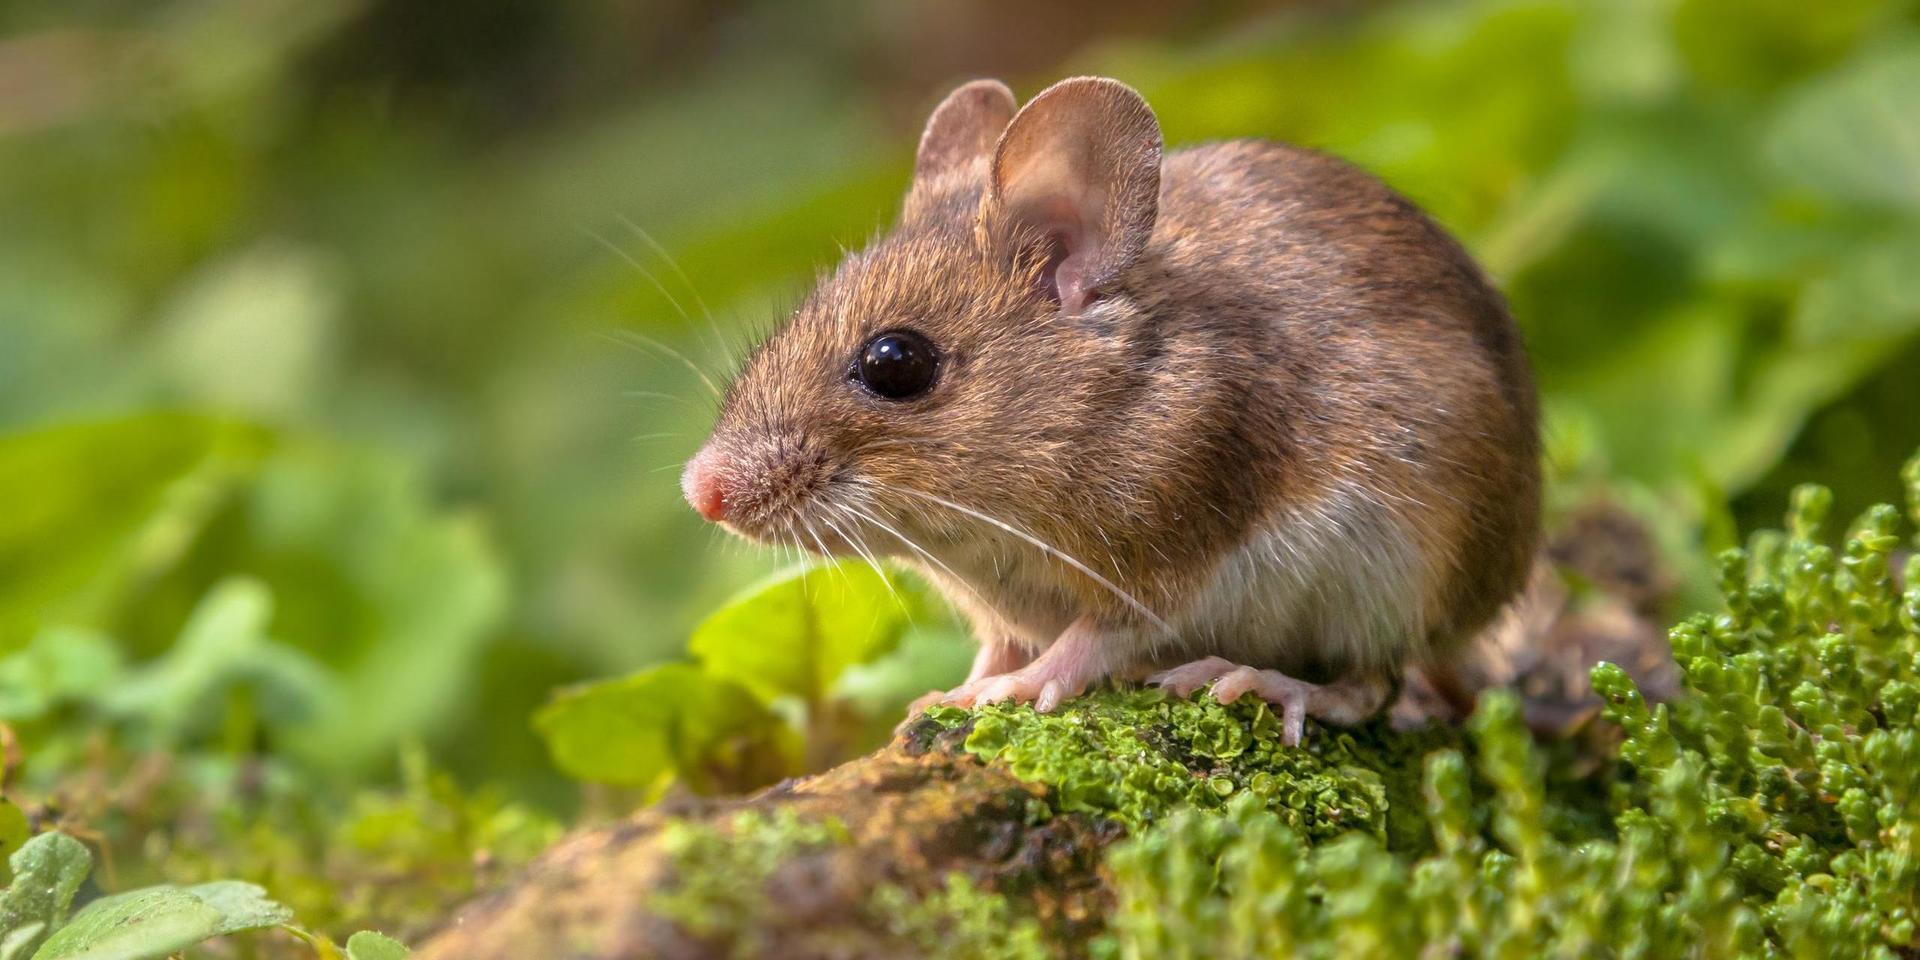 Möss kan ta sig in genom små springor. 'Det räcker med någon centimeter glipa. Även om en mus ser ut att vara lite större är det egentligen bara skallen den behöver kunna pressa igenom. Kroppen kan den dra efter sig', säger Didrik Vanhoenacker, jourhavande biolog vid Naturhistoriska riksmuseet.